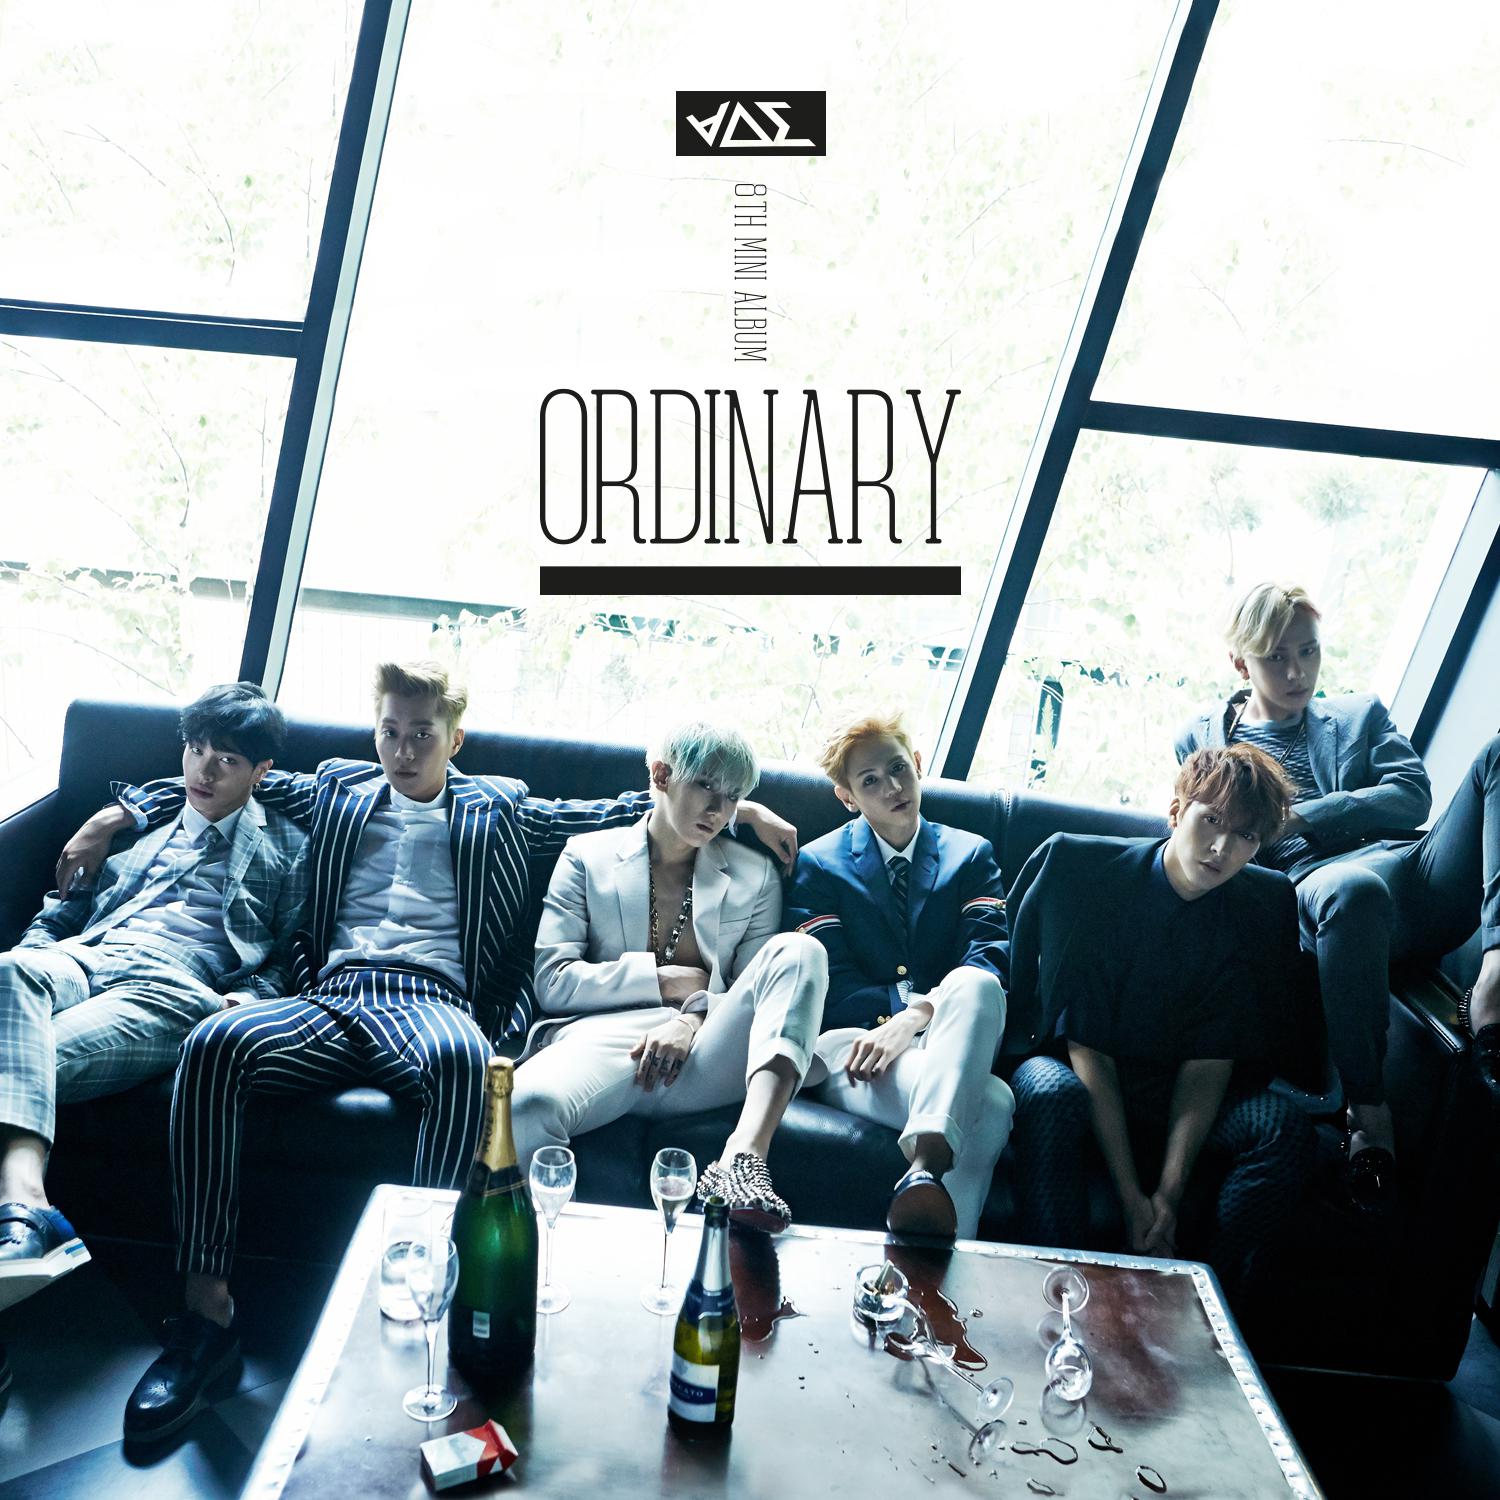 스위트 룸歌词 歌手Beast-专辑Ordinary-单曲《스위트 룸》LRC歌词下载